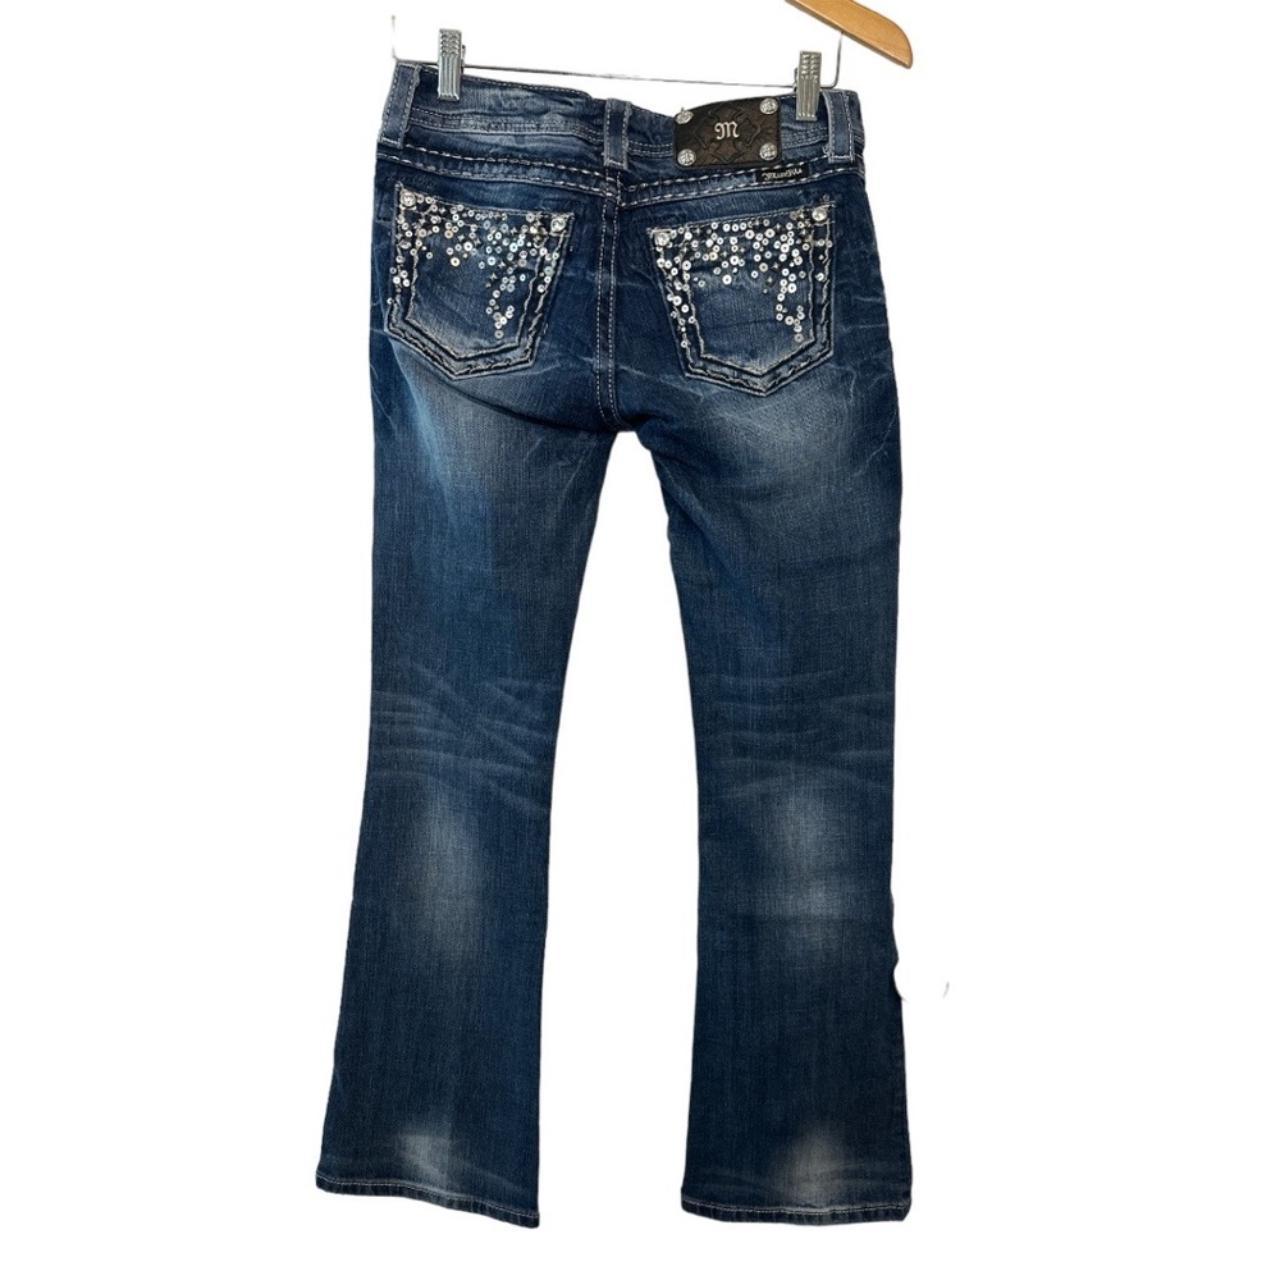 Miss Me Easy Boot Denim Jeans with Embellished Back... - Depop